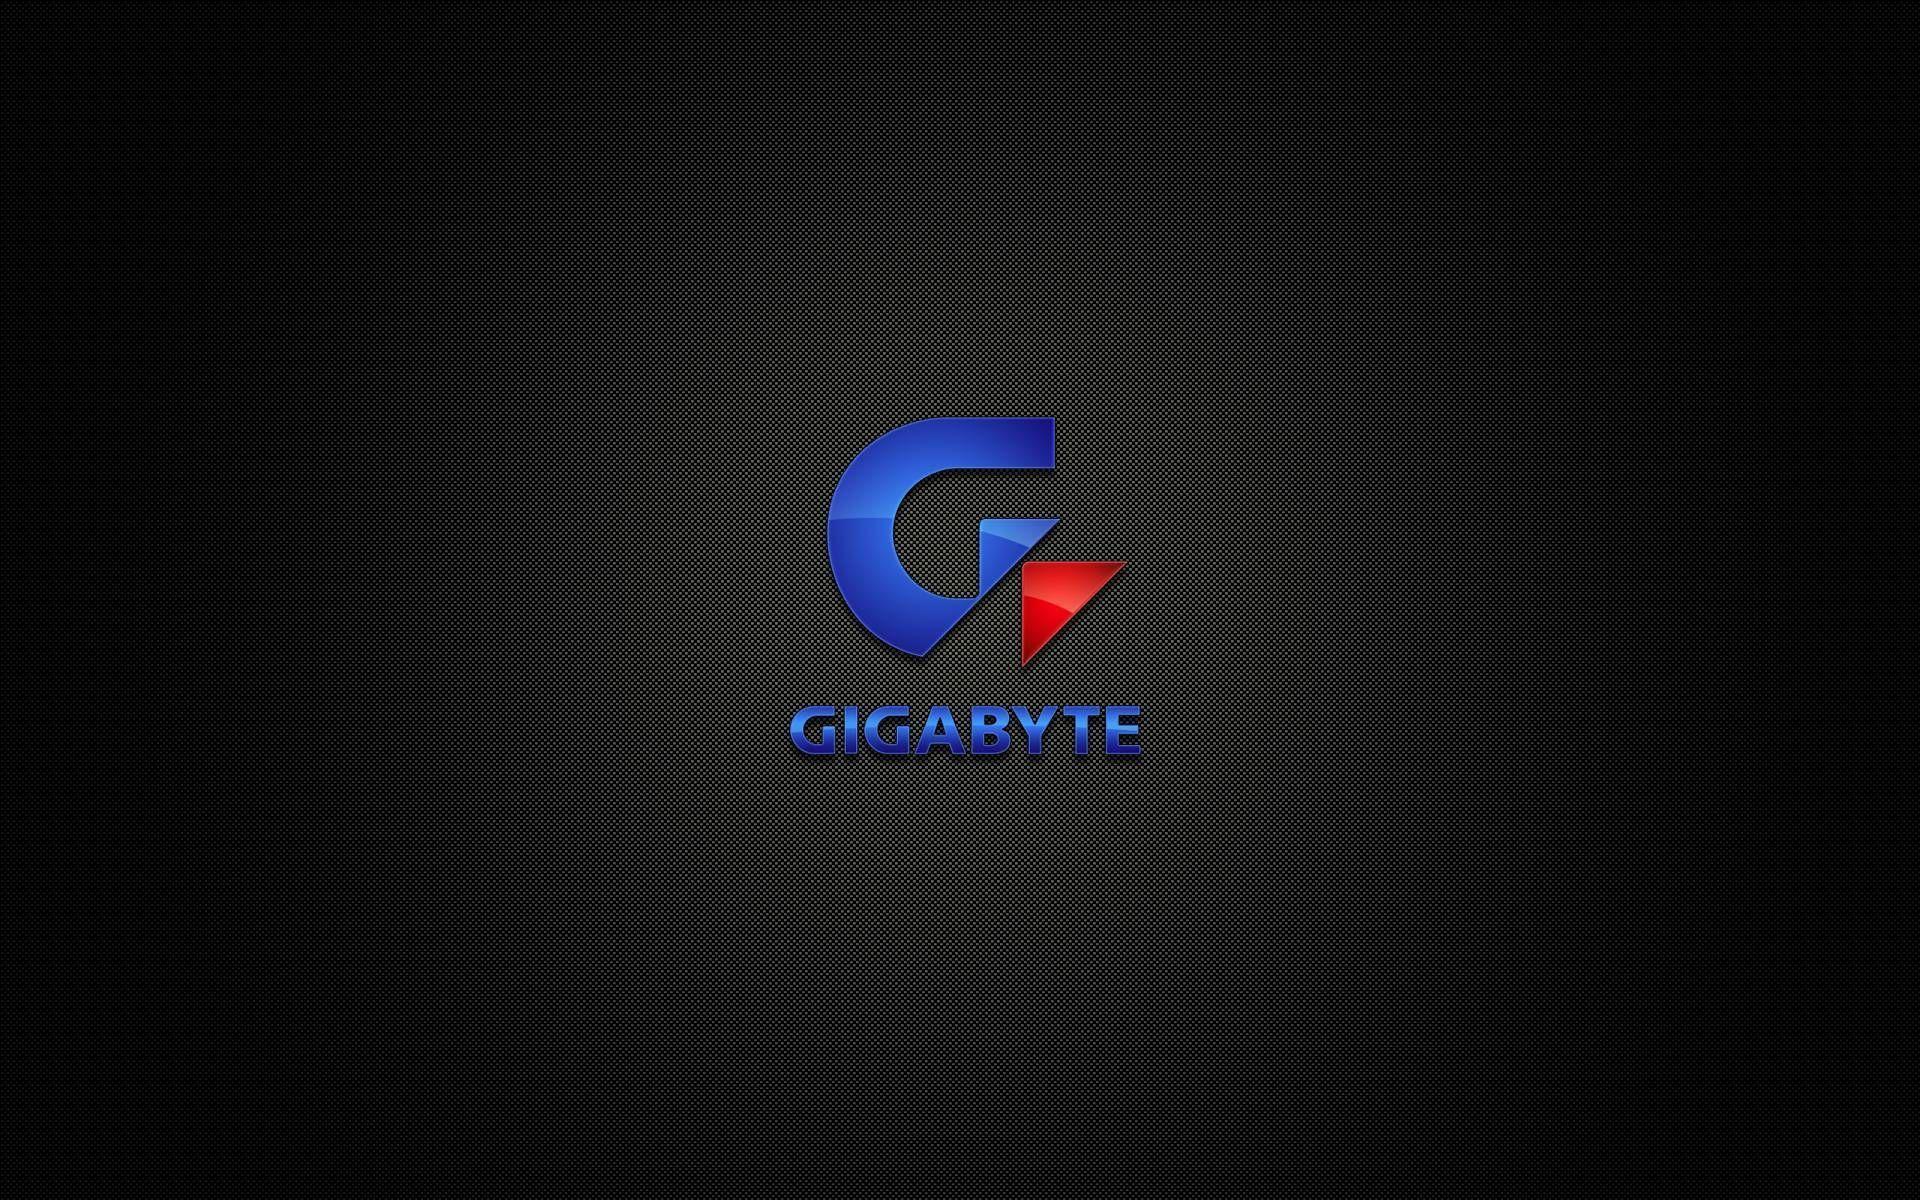 gigabyte wallpaper 1080p